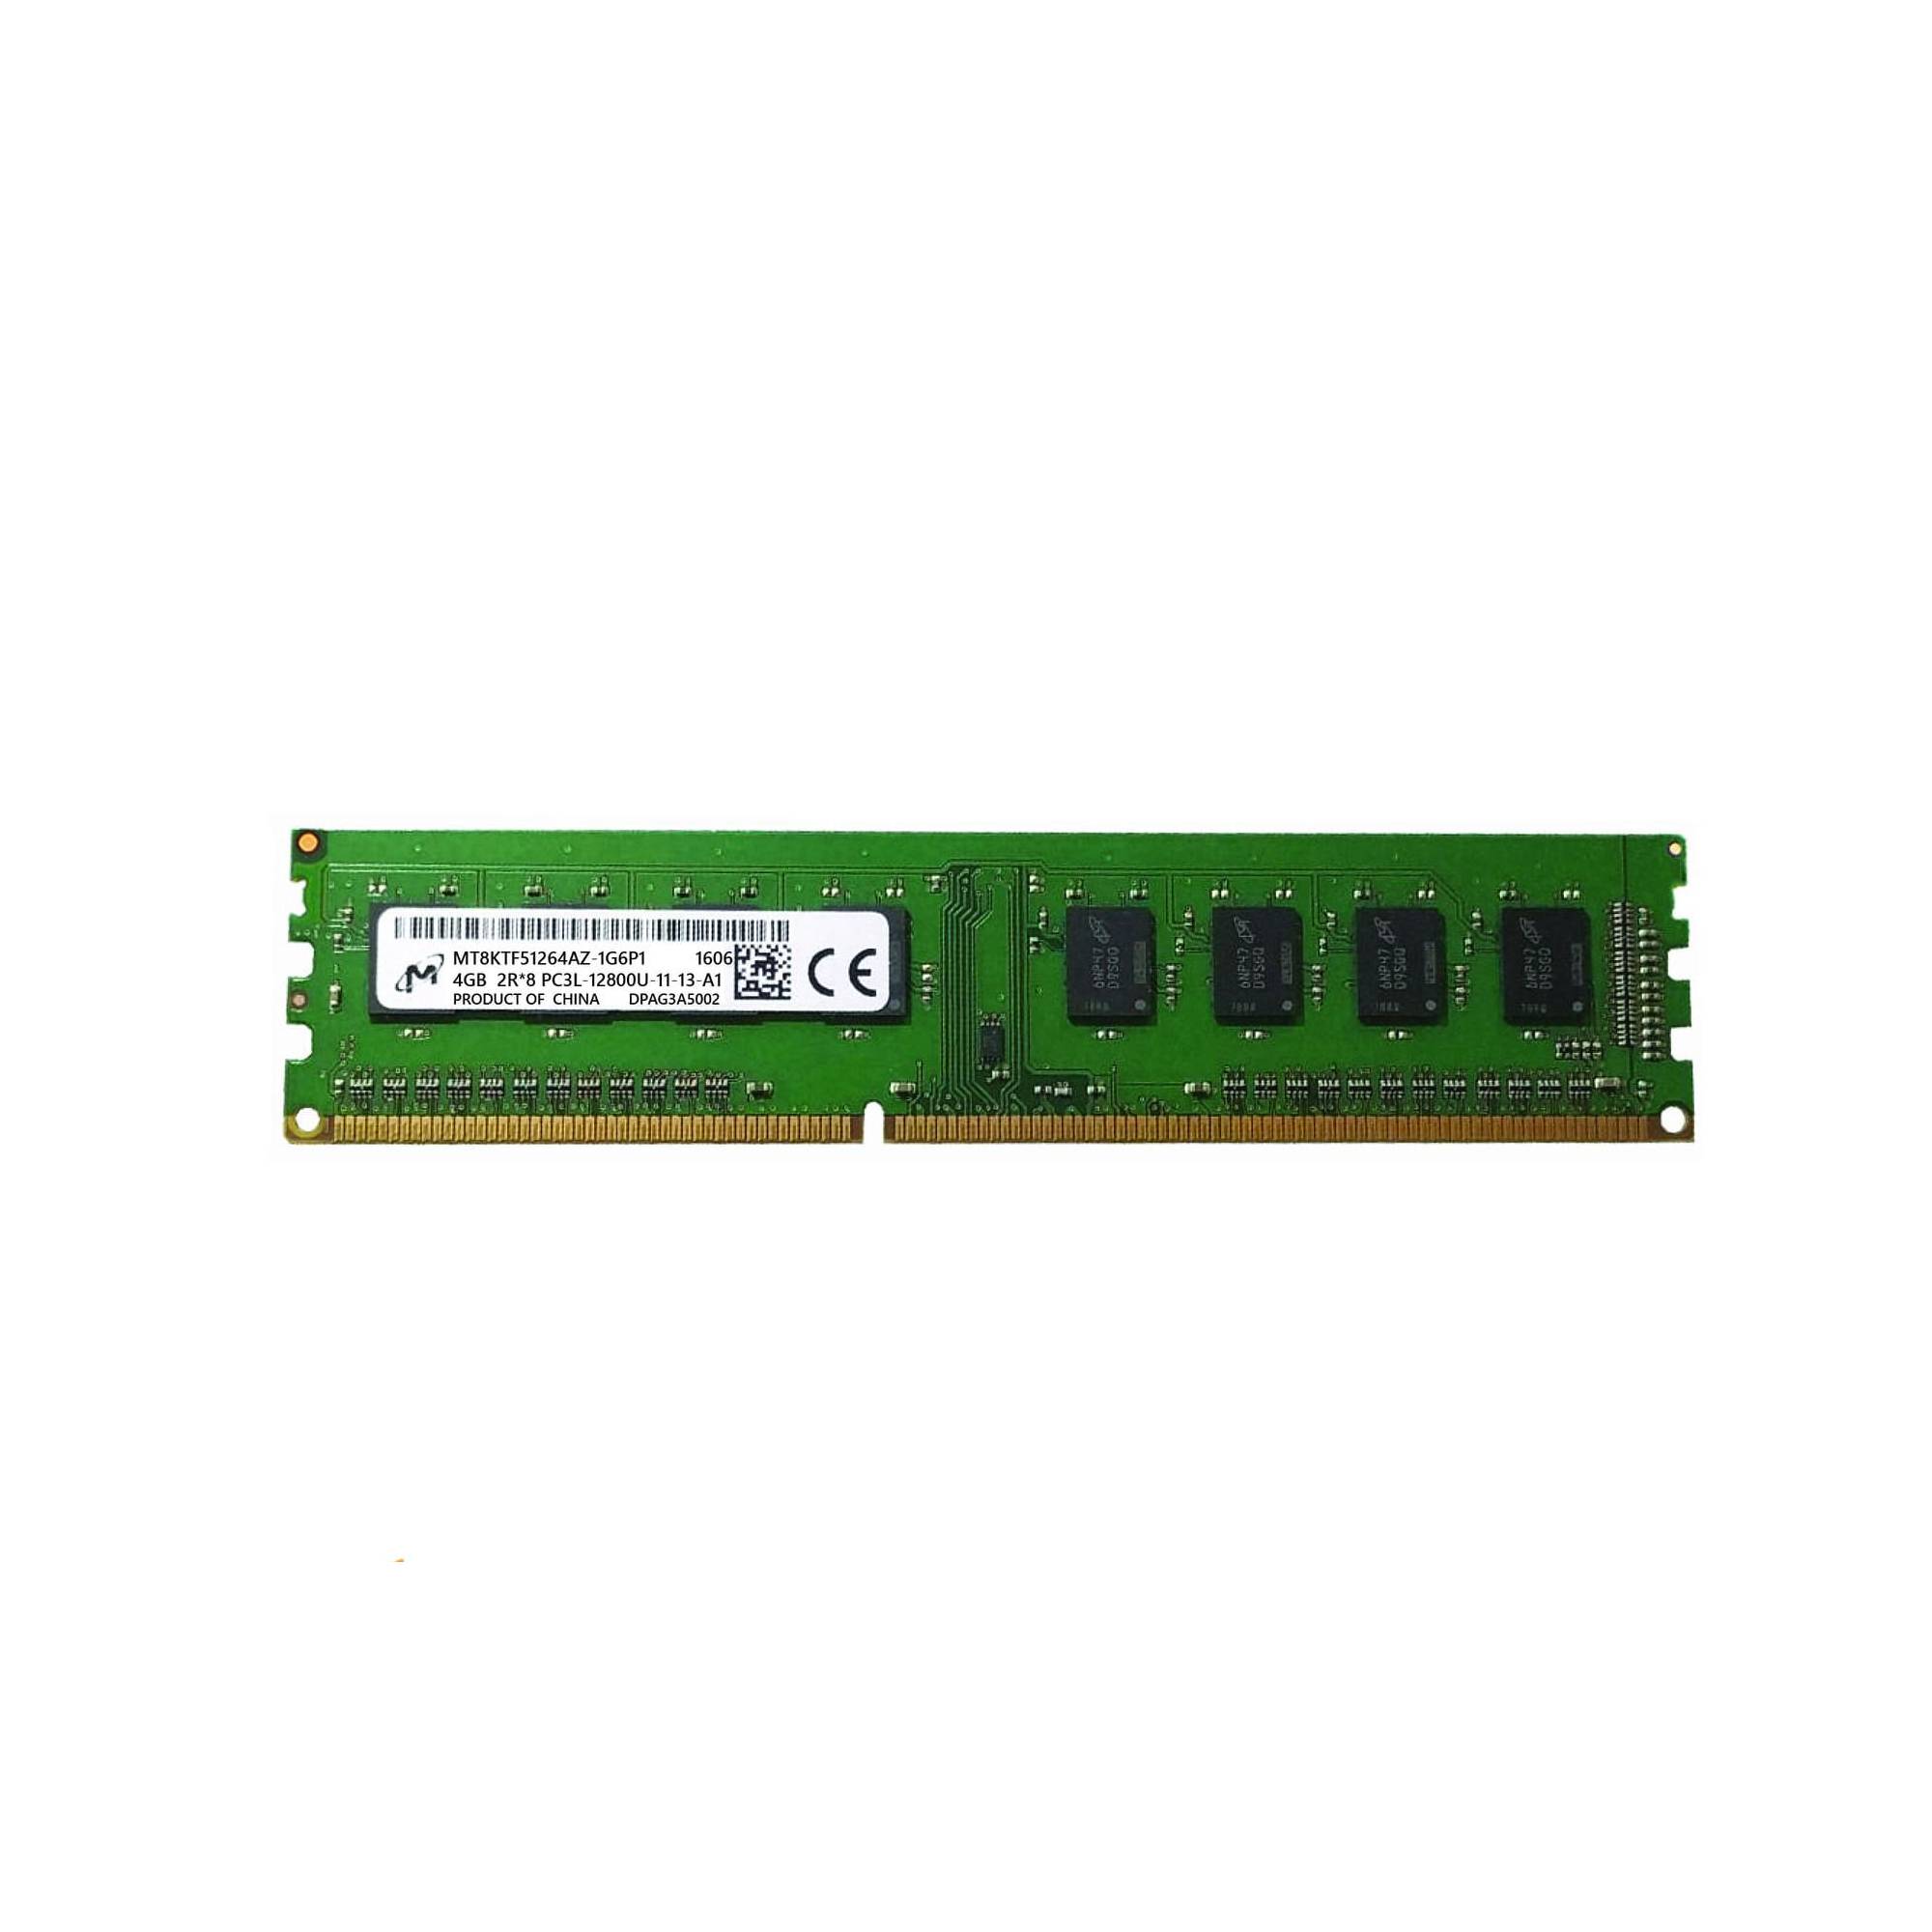 رم دسکتاپ DDR3L تک کاناله 1600 مگاهرتز CL11 میکرون مدل PC3L ظرفیت 4 گیگابایت